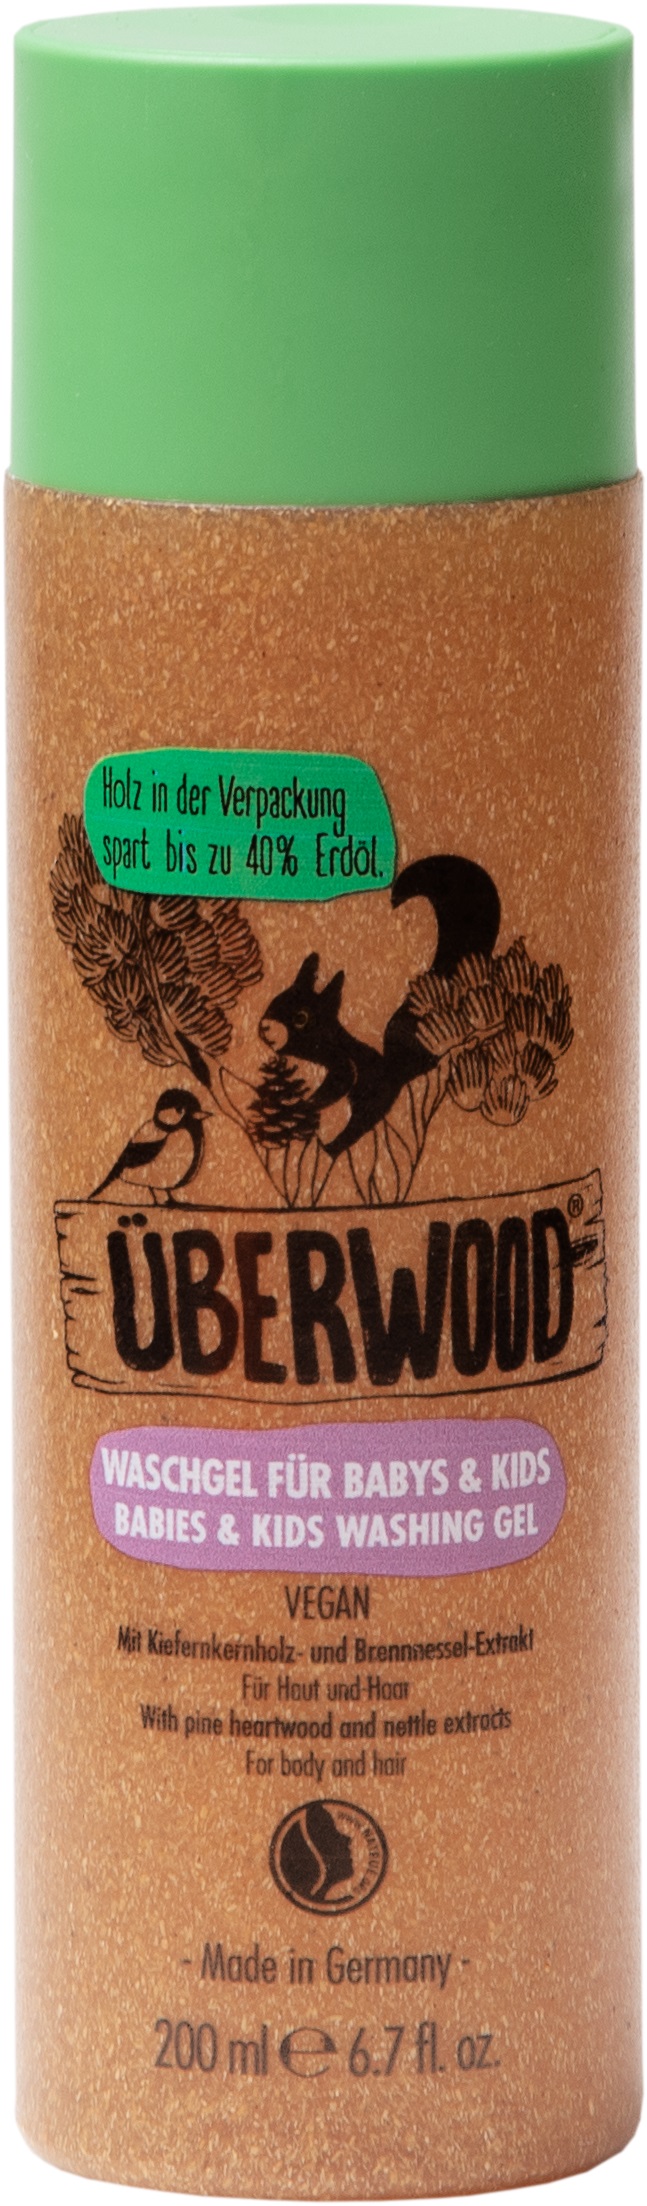 Überwood Sprchový gel pro kojence a děti 200ml